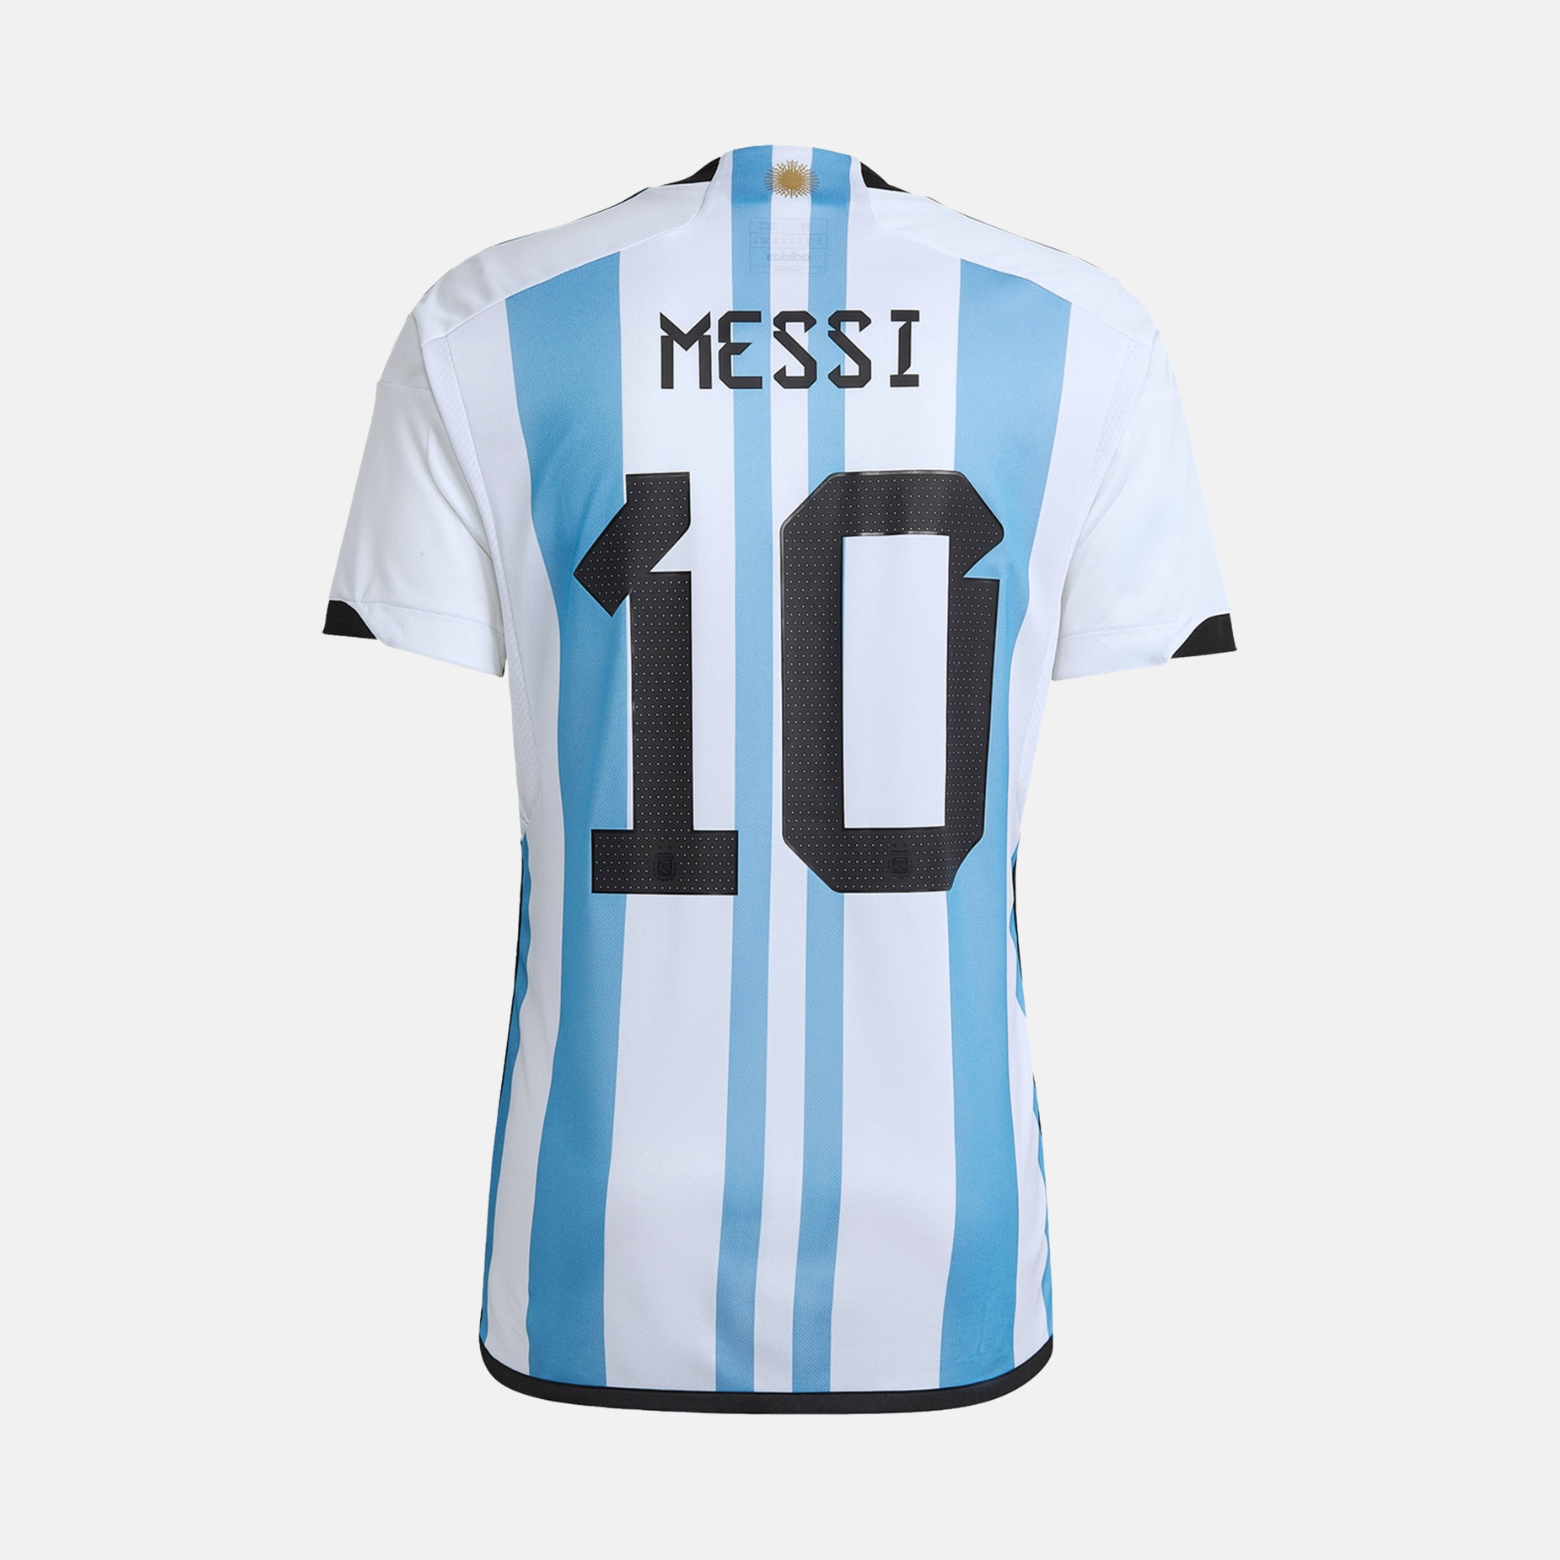 Maillot de l'Argentine de Messi